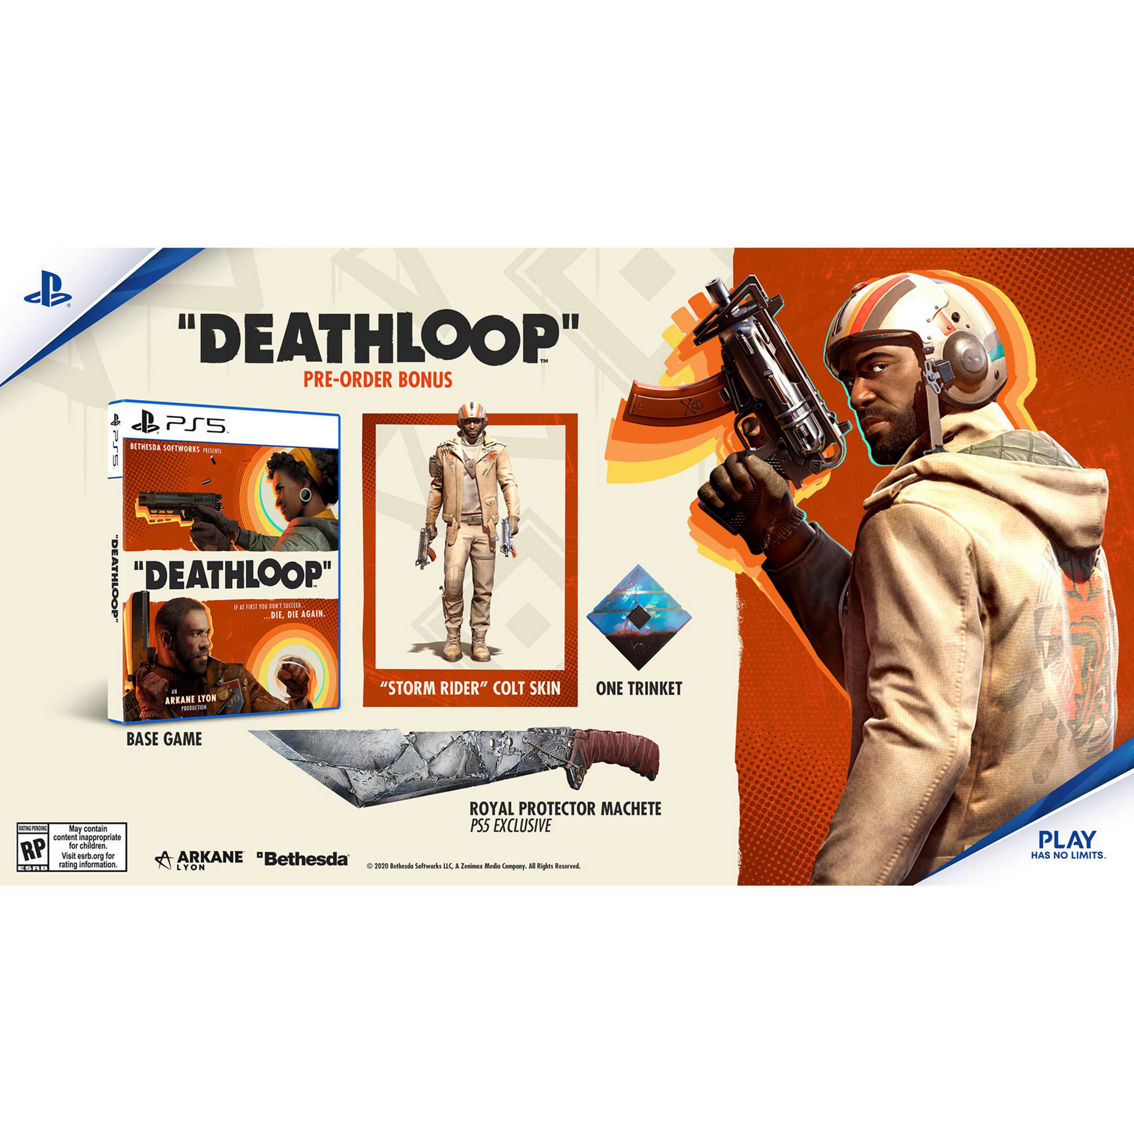 Deathloop (PS5) - Image 2 of 2